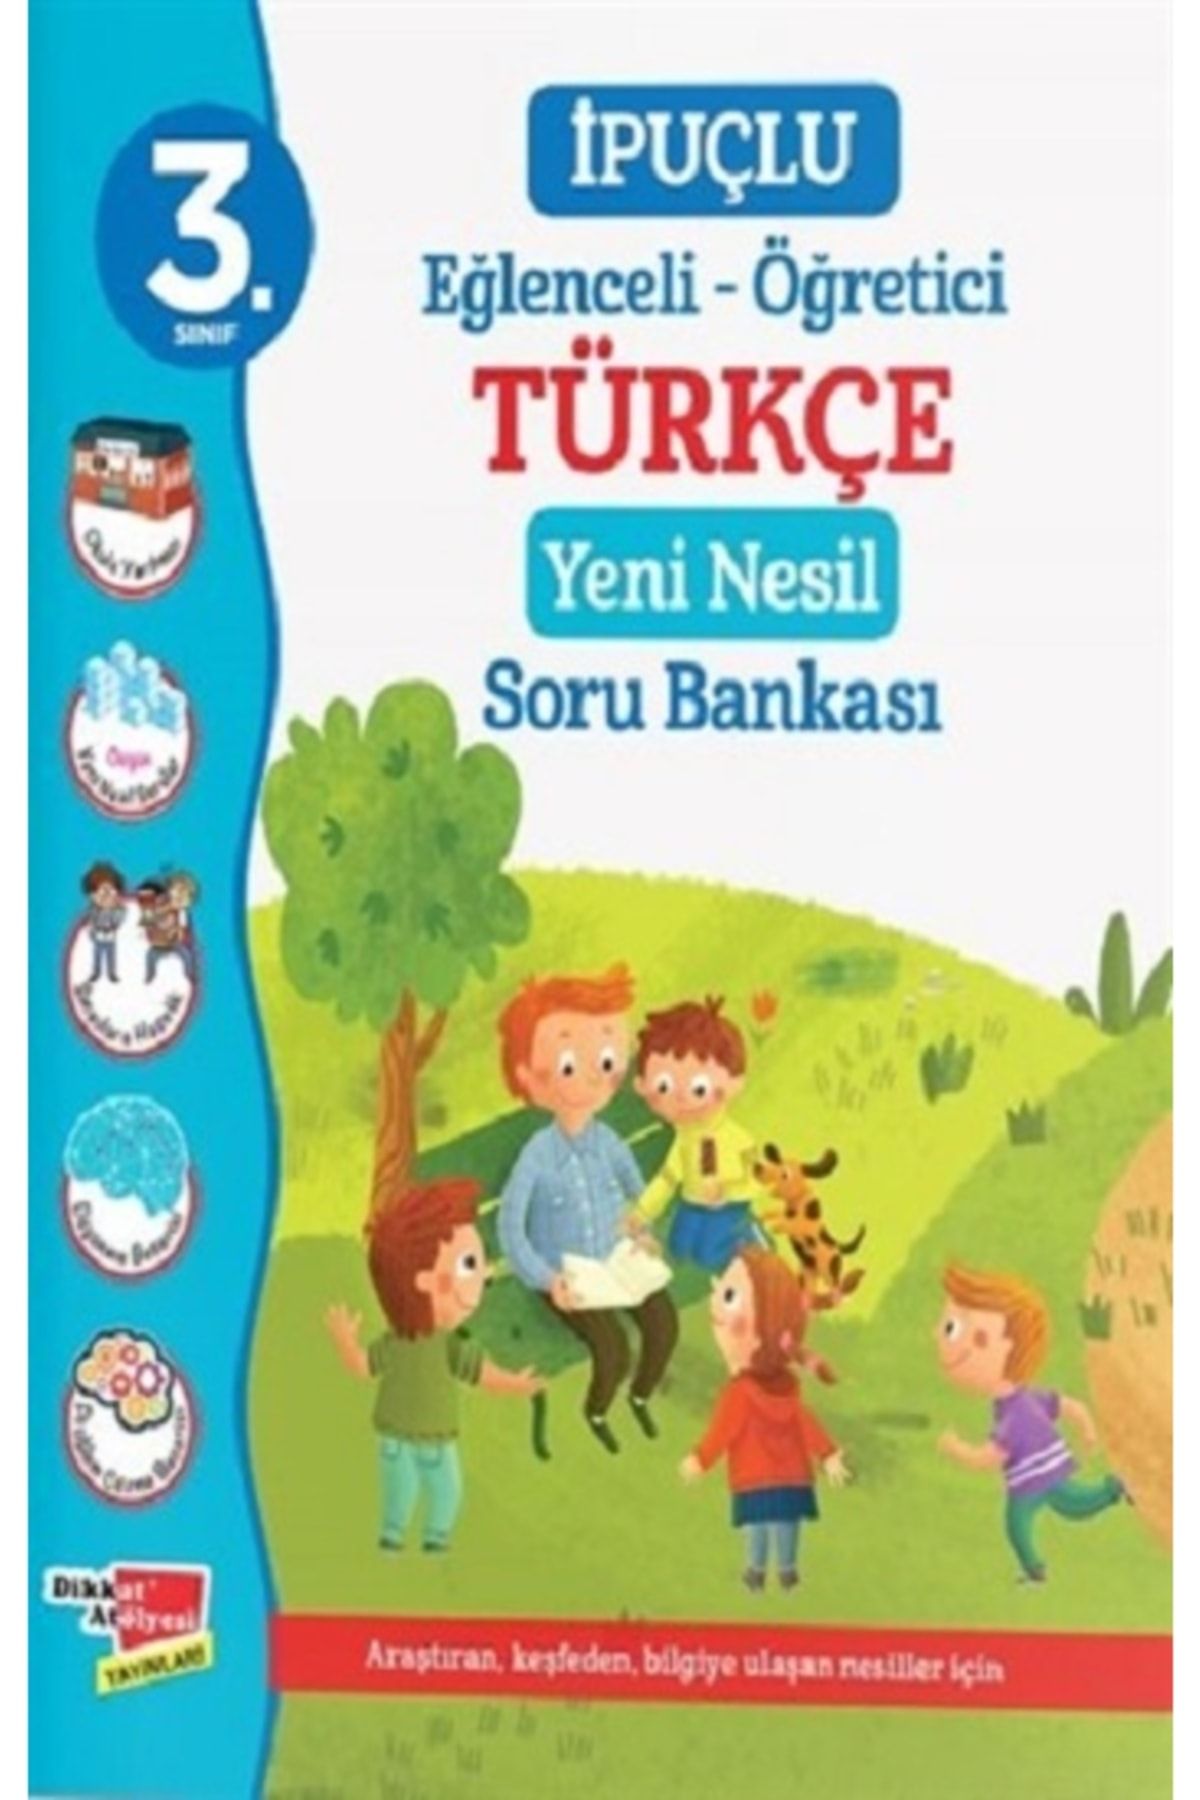 Dikkat Atölyesi Yayınları 3. Sınıf Ipuçlu Eğlenceli - Öğetici Türkçe Yeni Nesil Soru Bankas